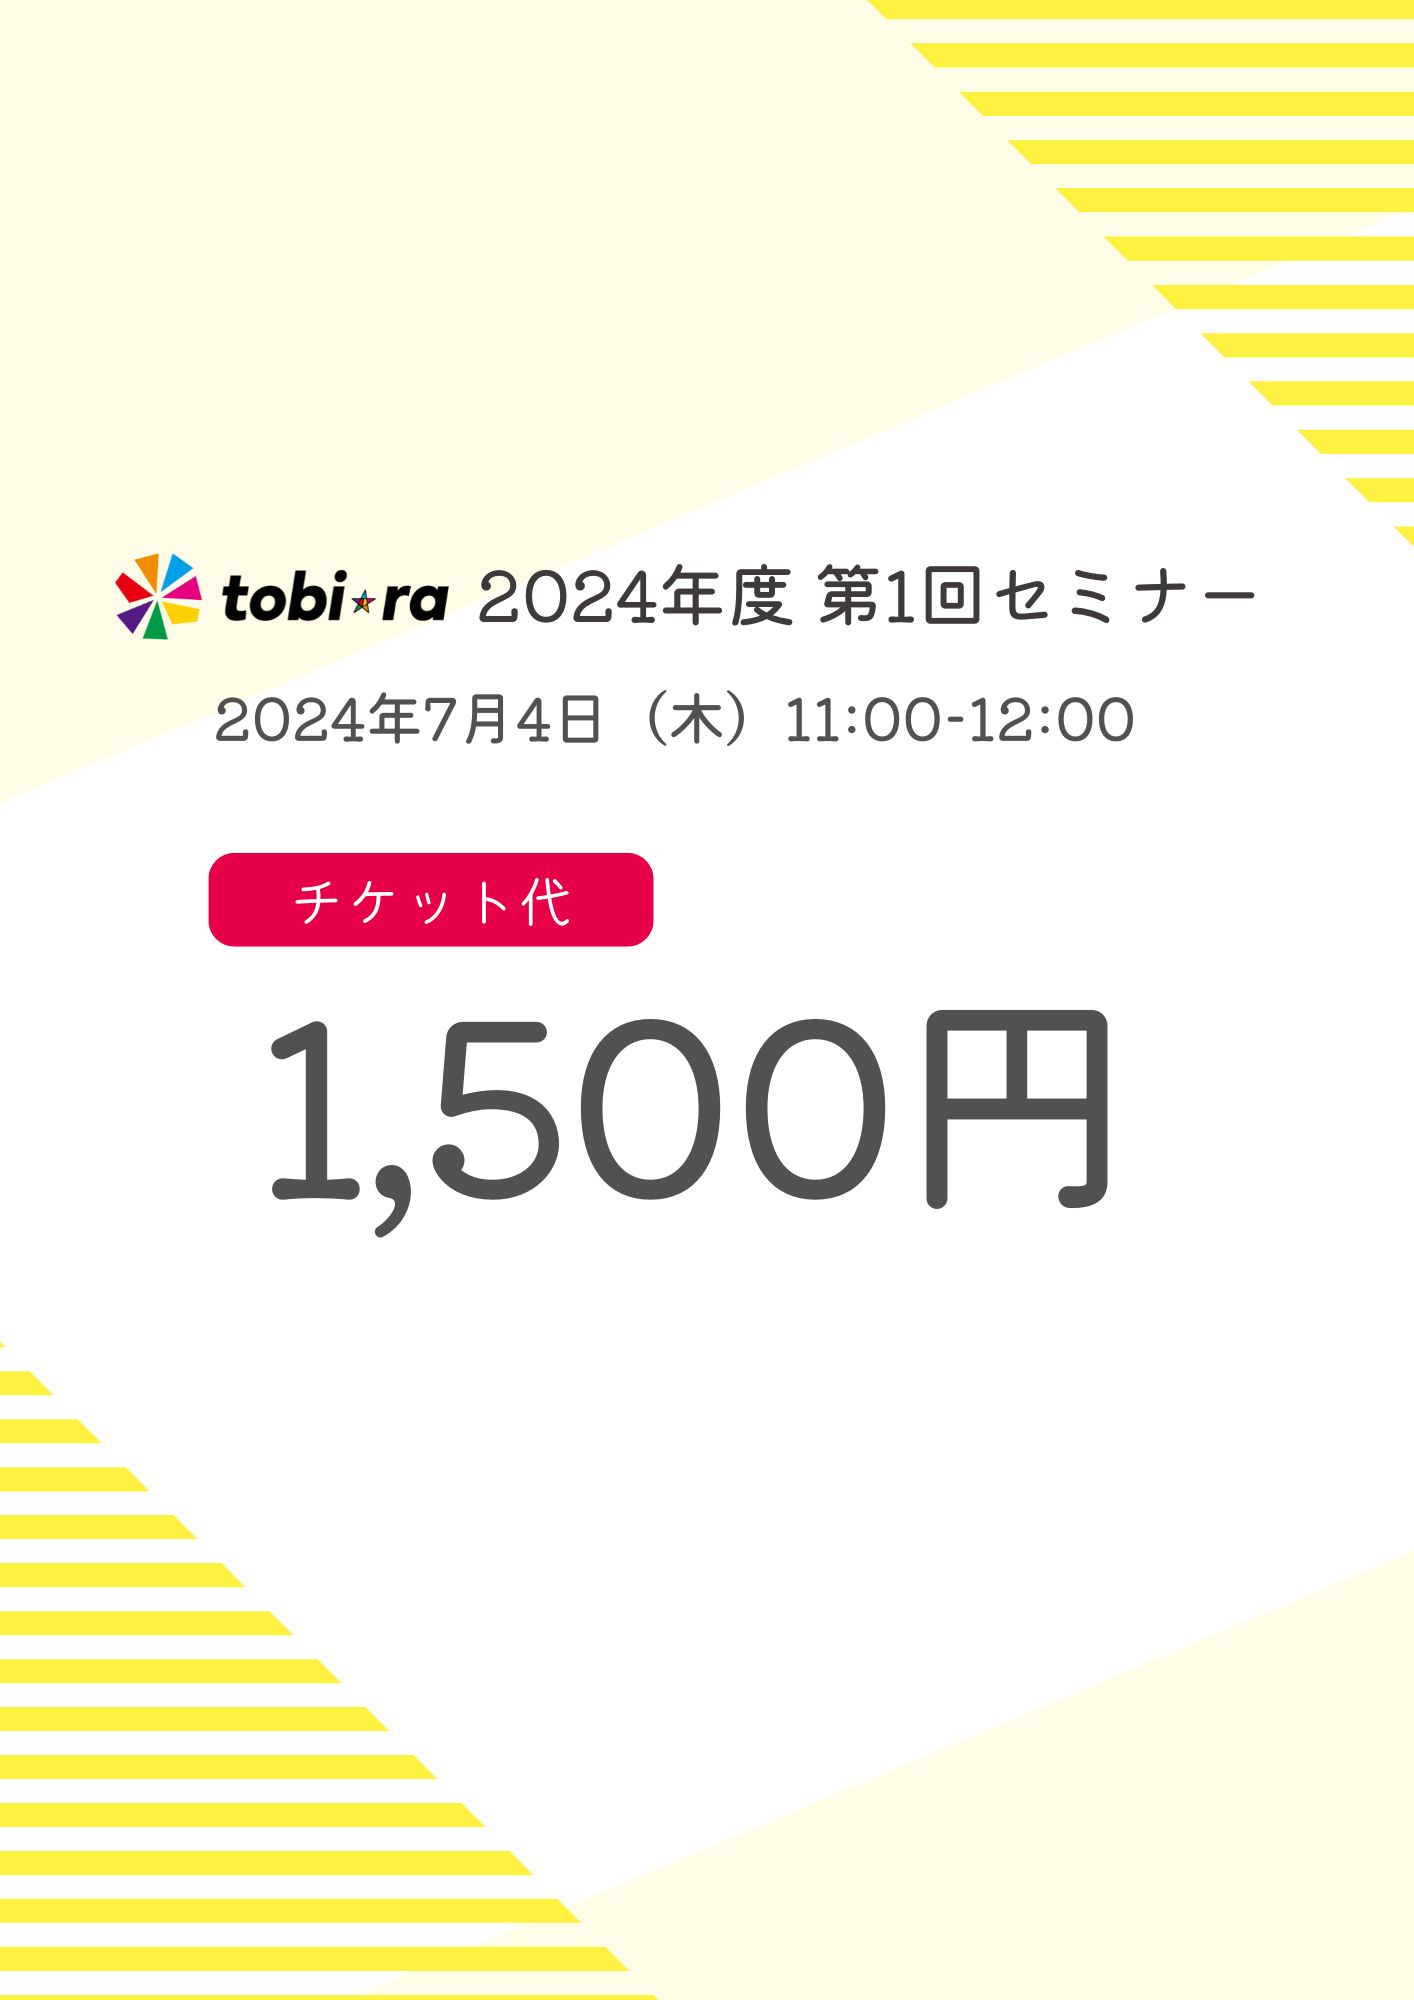 【2024年7月4日(木)】tobiraセミナー「部下や同僚、自分自身の やる気スイッチを入れるコツ」参加チケット